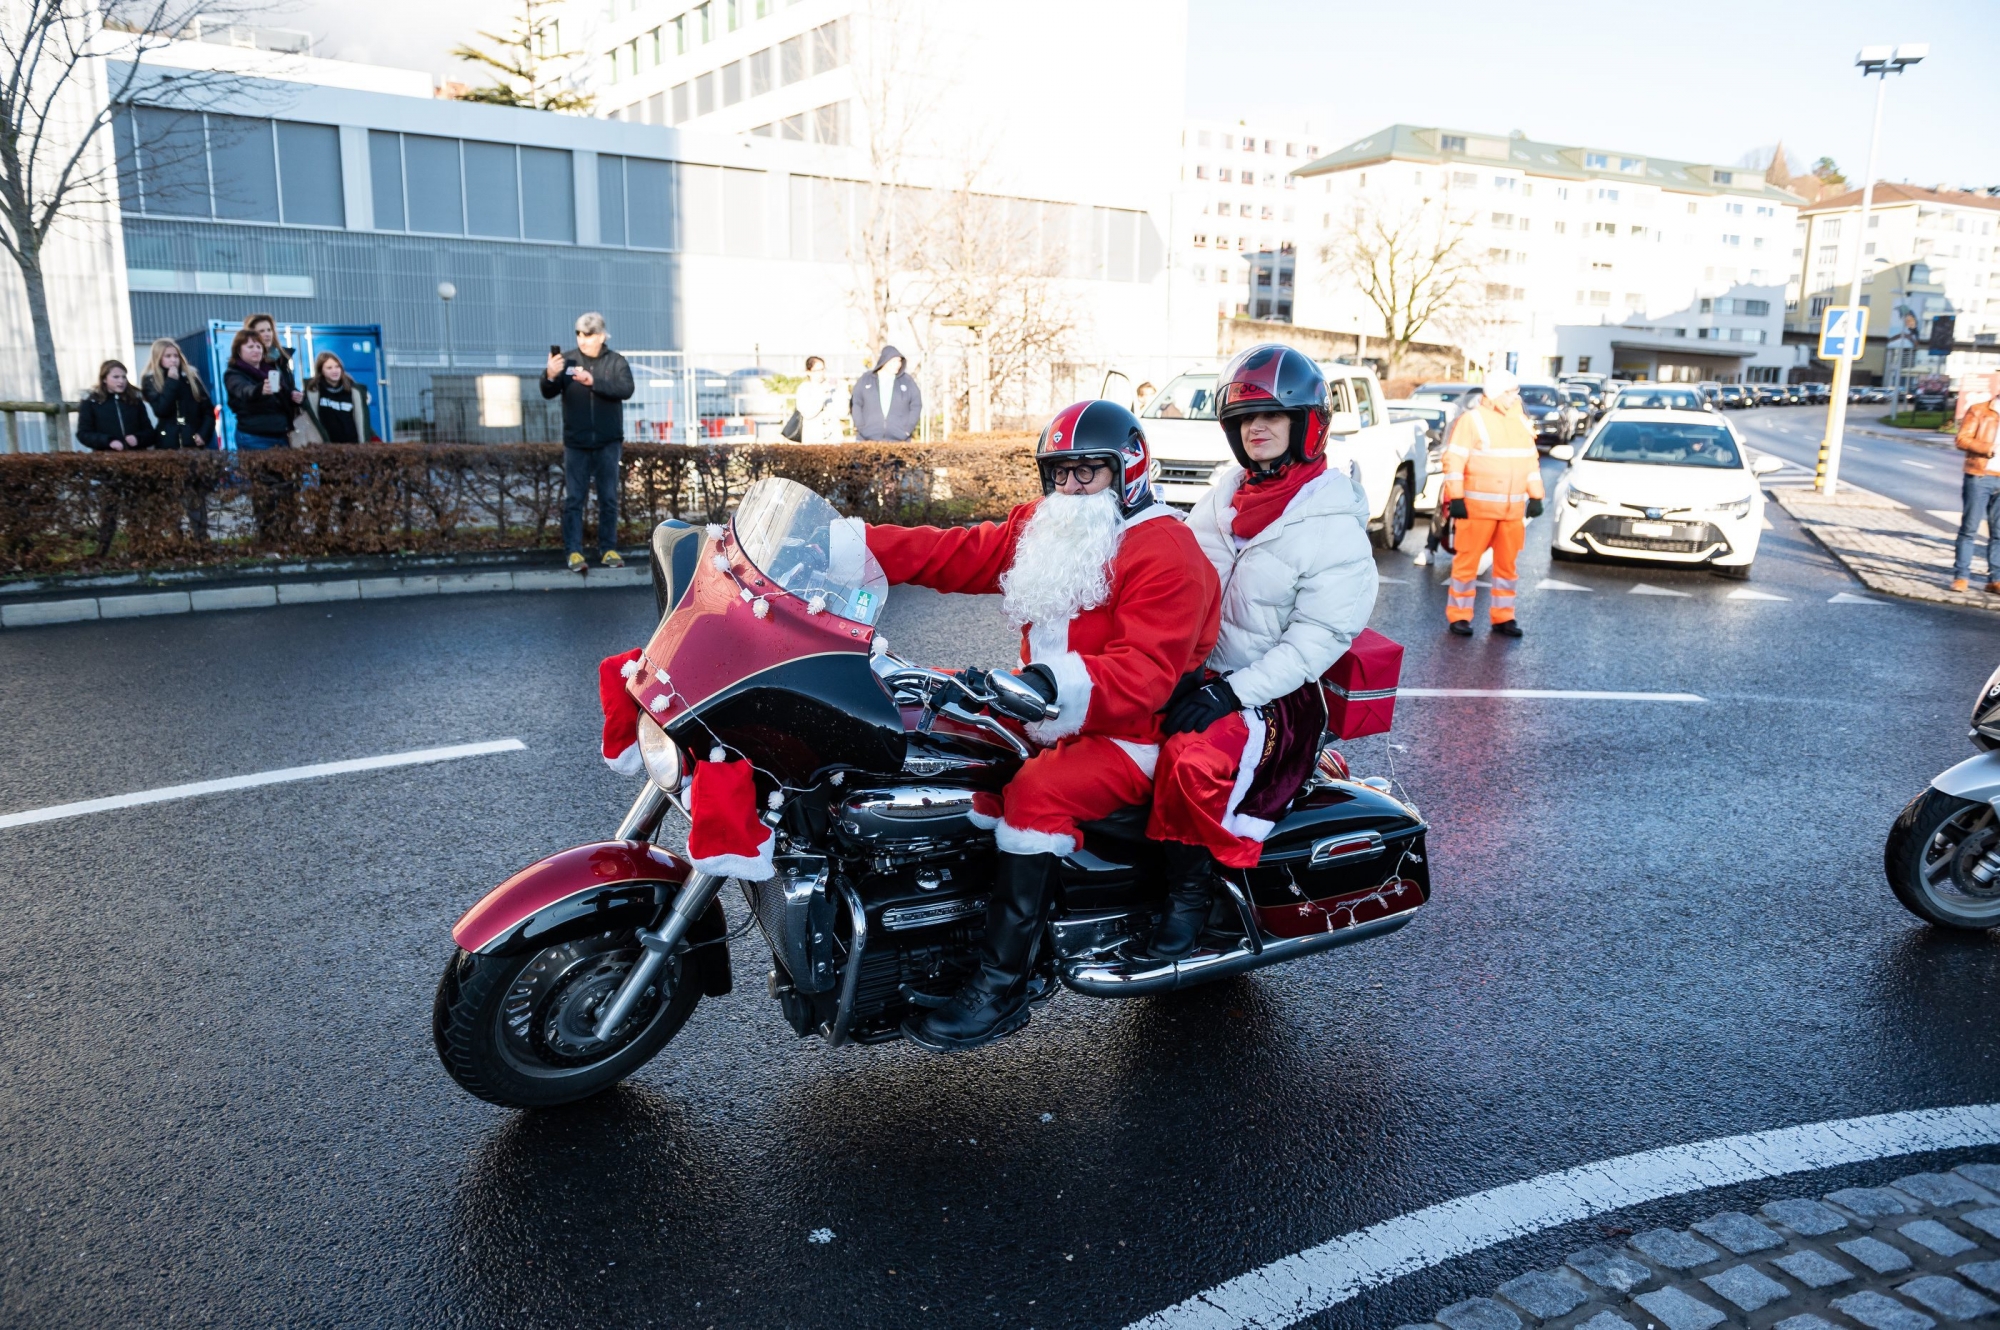 Rassemblement de Peres Noel a moto.    Neuchatel, le 21 decembre 2019  Photo: Lucas Vuitel